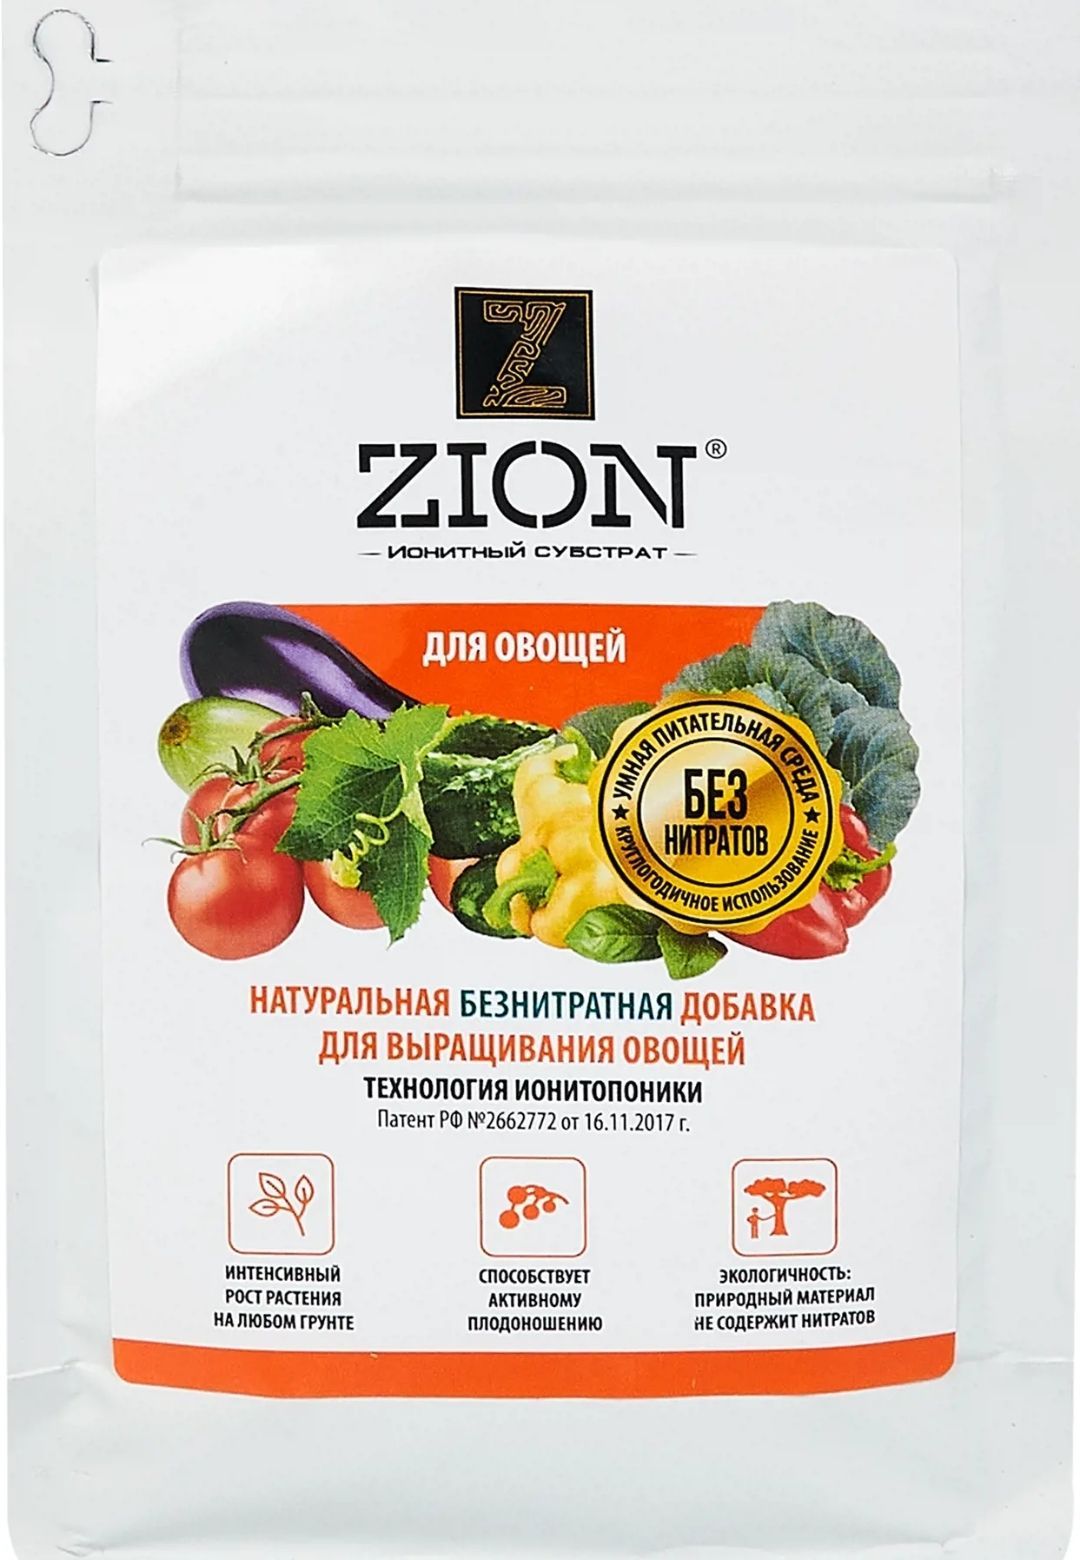 Цион для овощей отзывы. Zion Цион для овощей. Zion для овощей в Леруа Мерлен. Озон удобрение Цион для овощей. Цион для овощей купить.